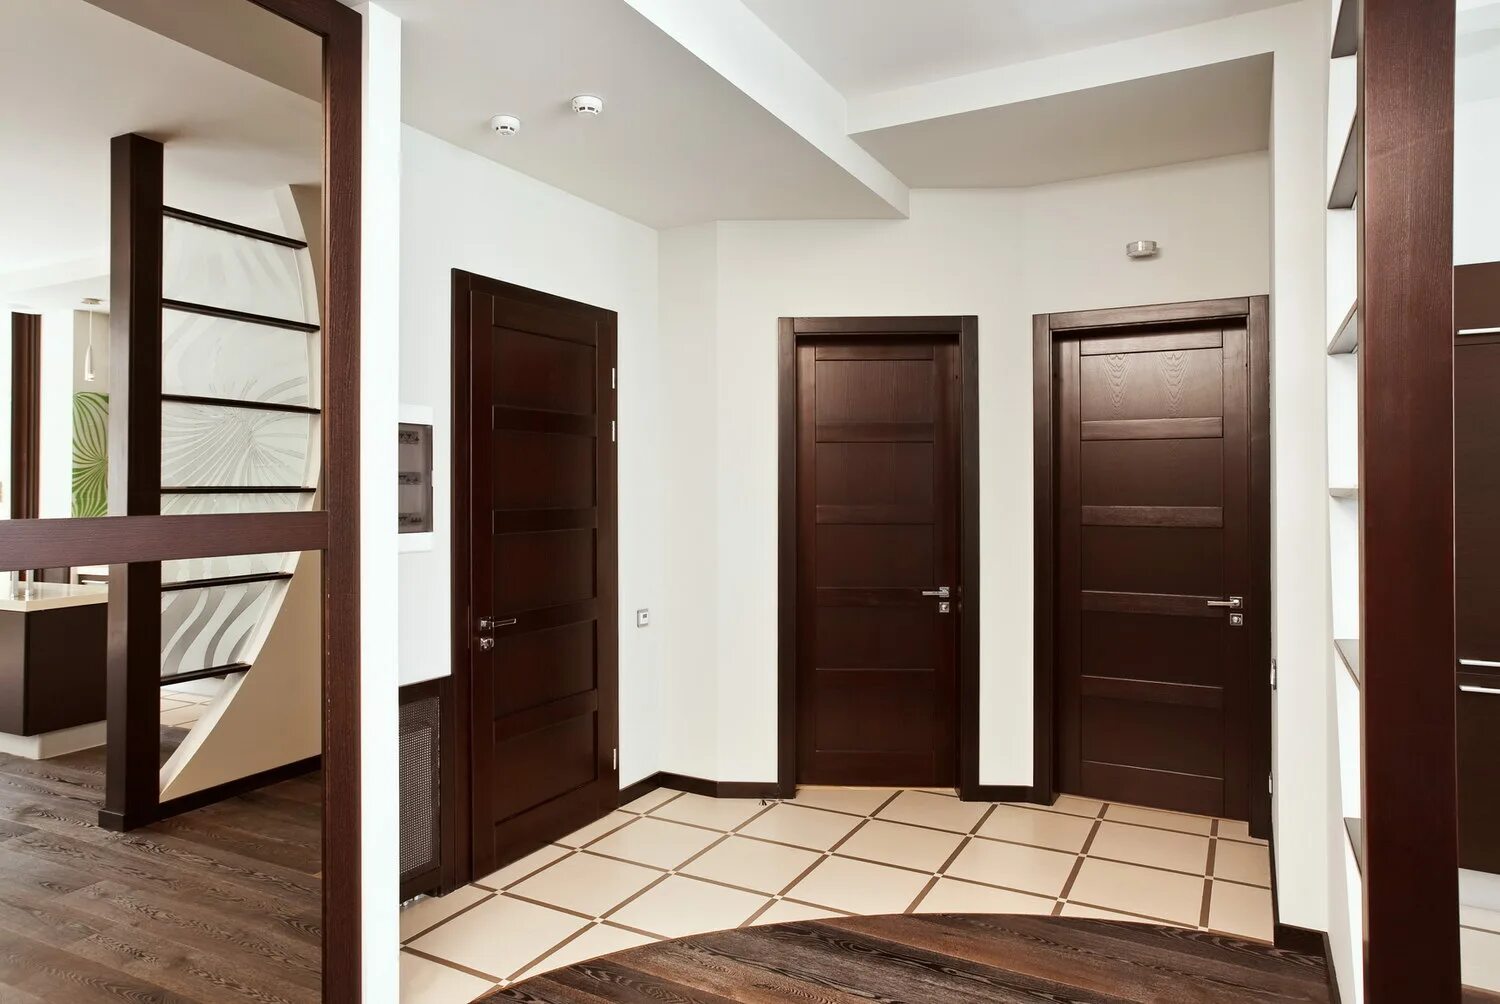 В коридор выходило несколько дверей и пока. Интерьер квартиры с коричневыми дверями. Дверь коричневая. Разные двери в интерьере квартиры. Межкомнатные двери в коридоре.